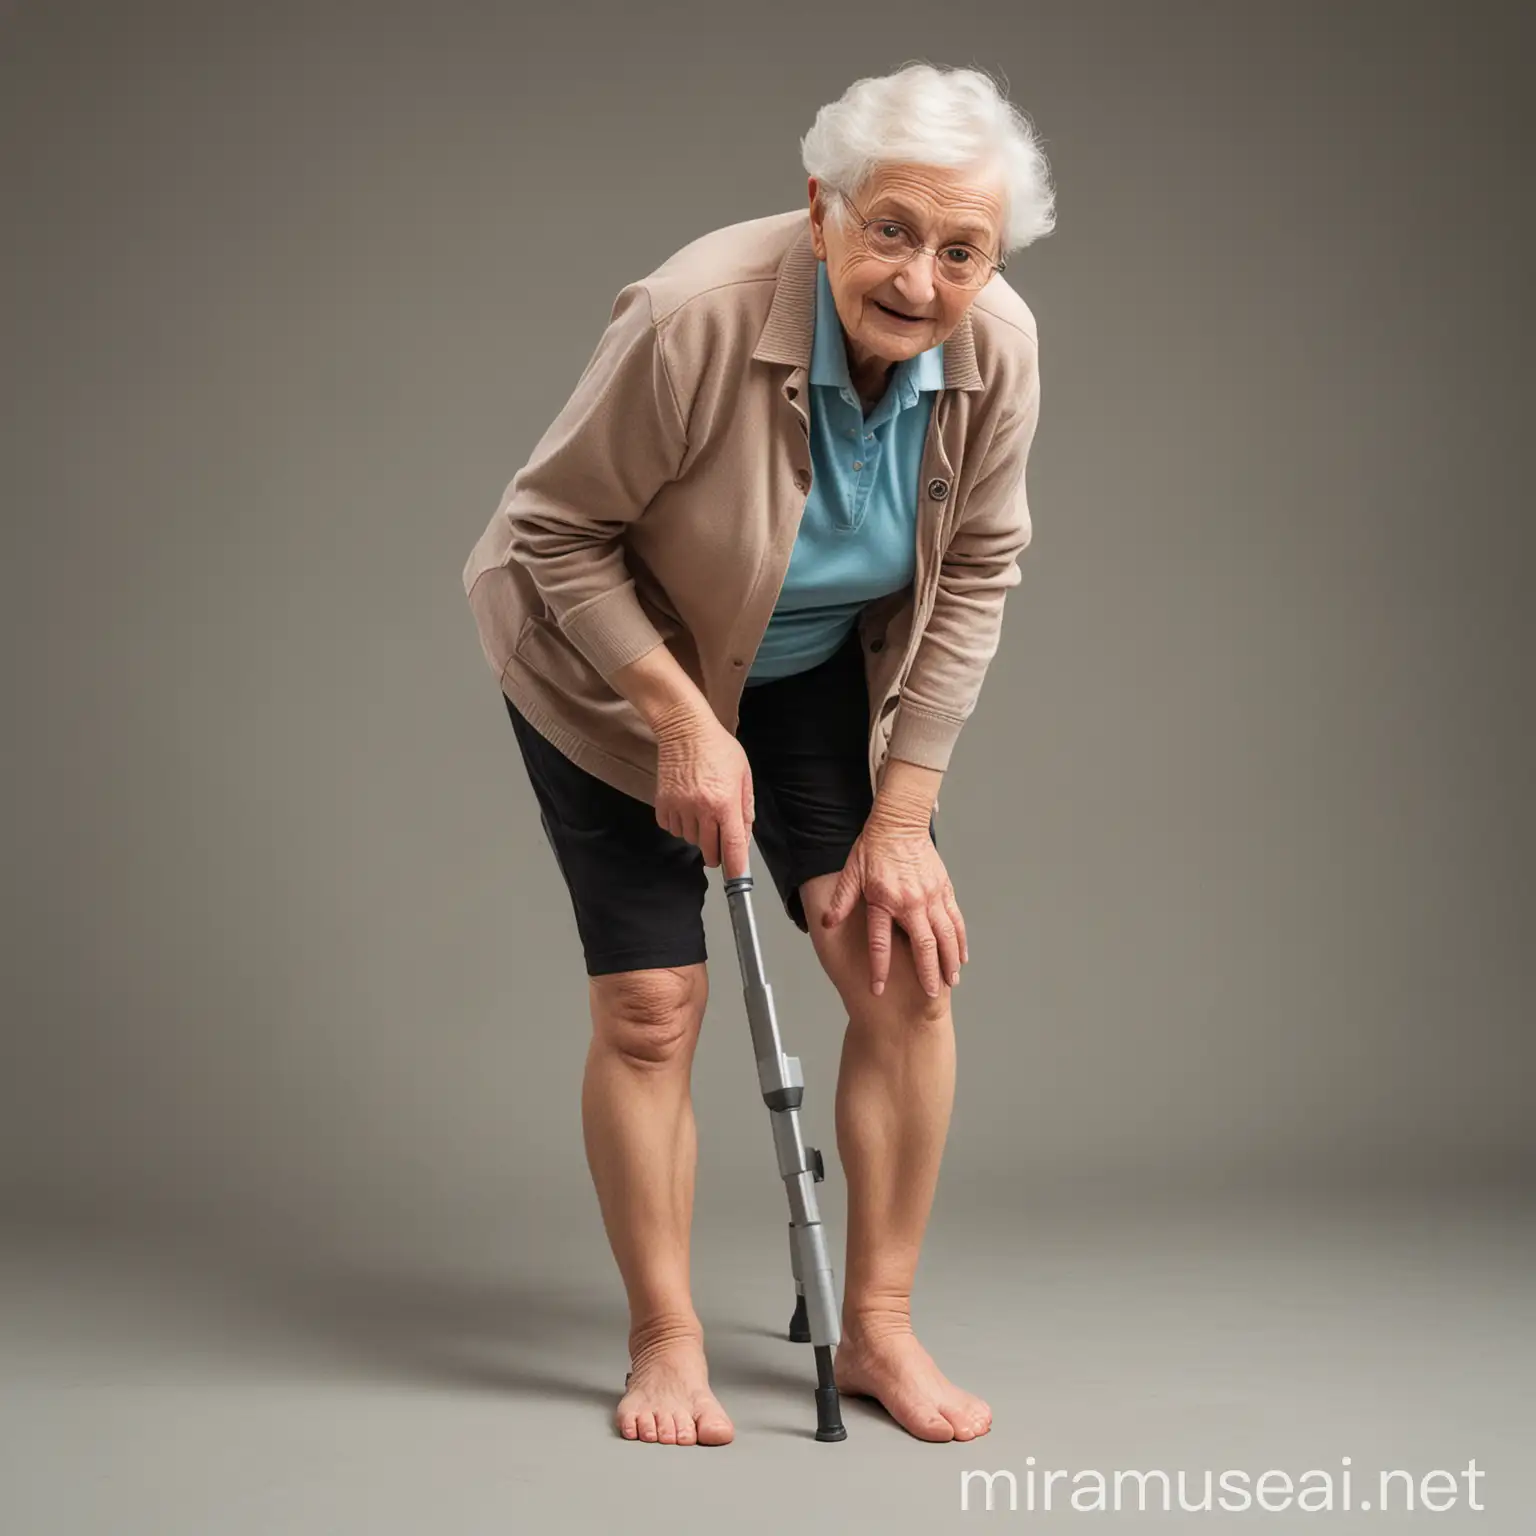 Foto 1 manusia lansia dengan full body menggunakan foreshortening